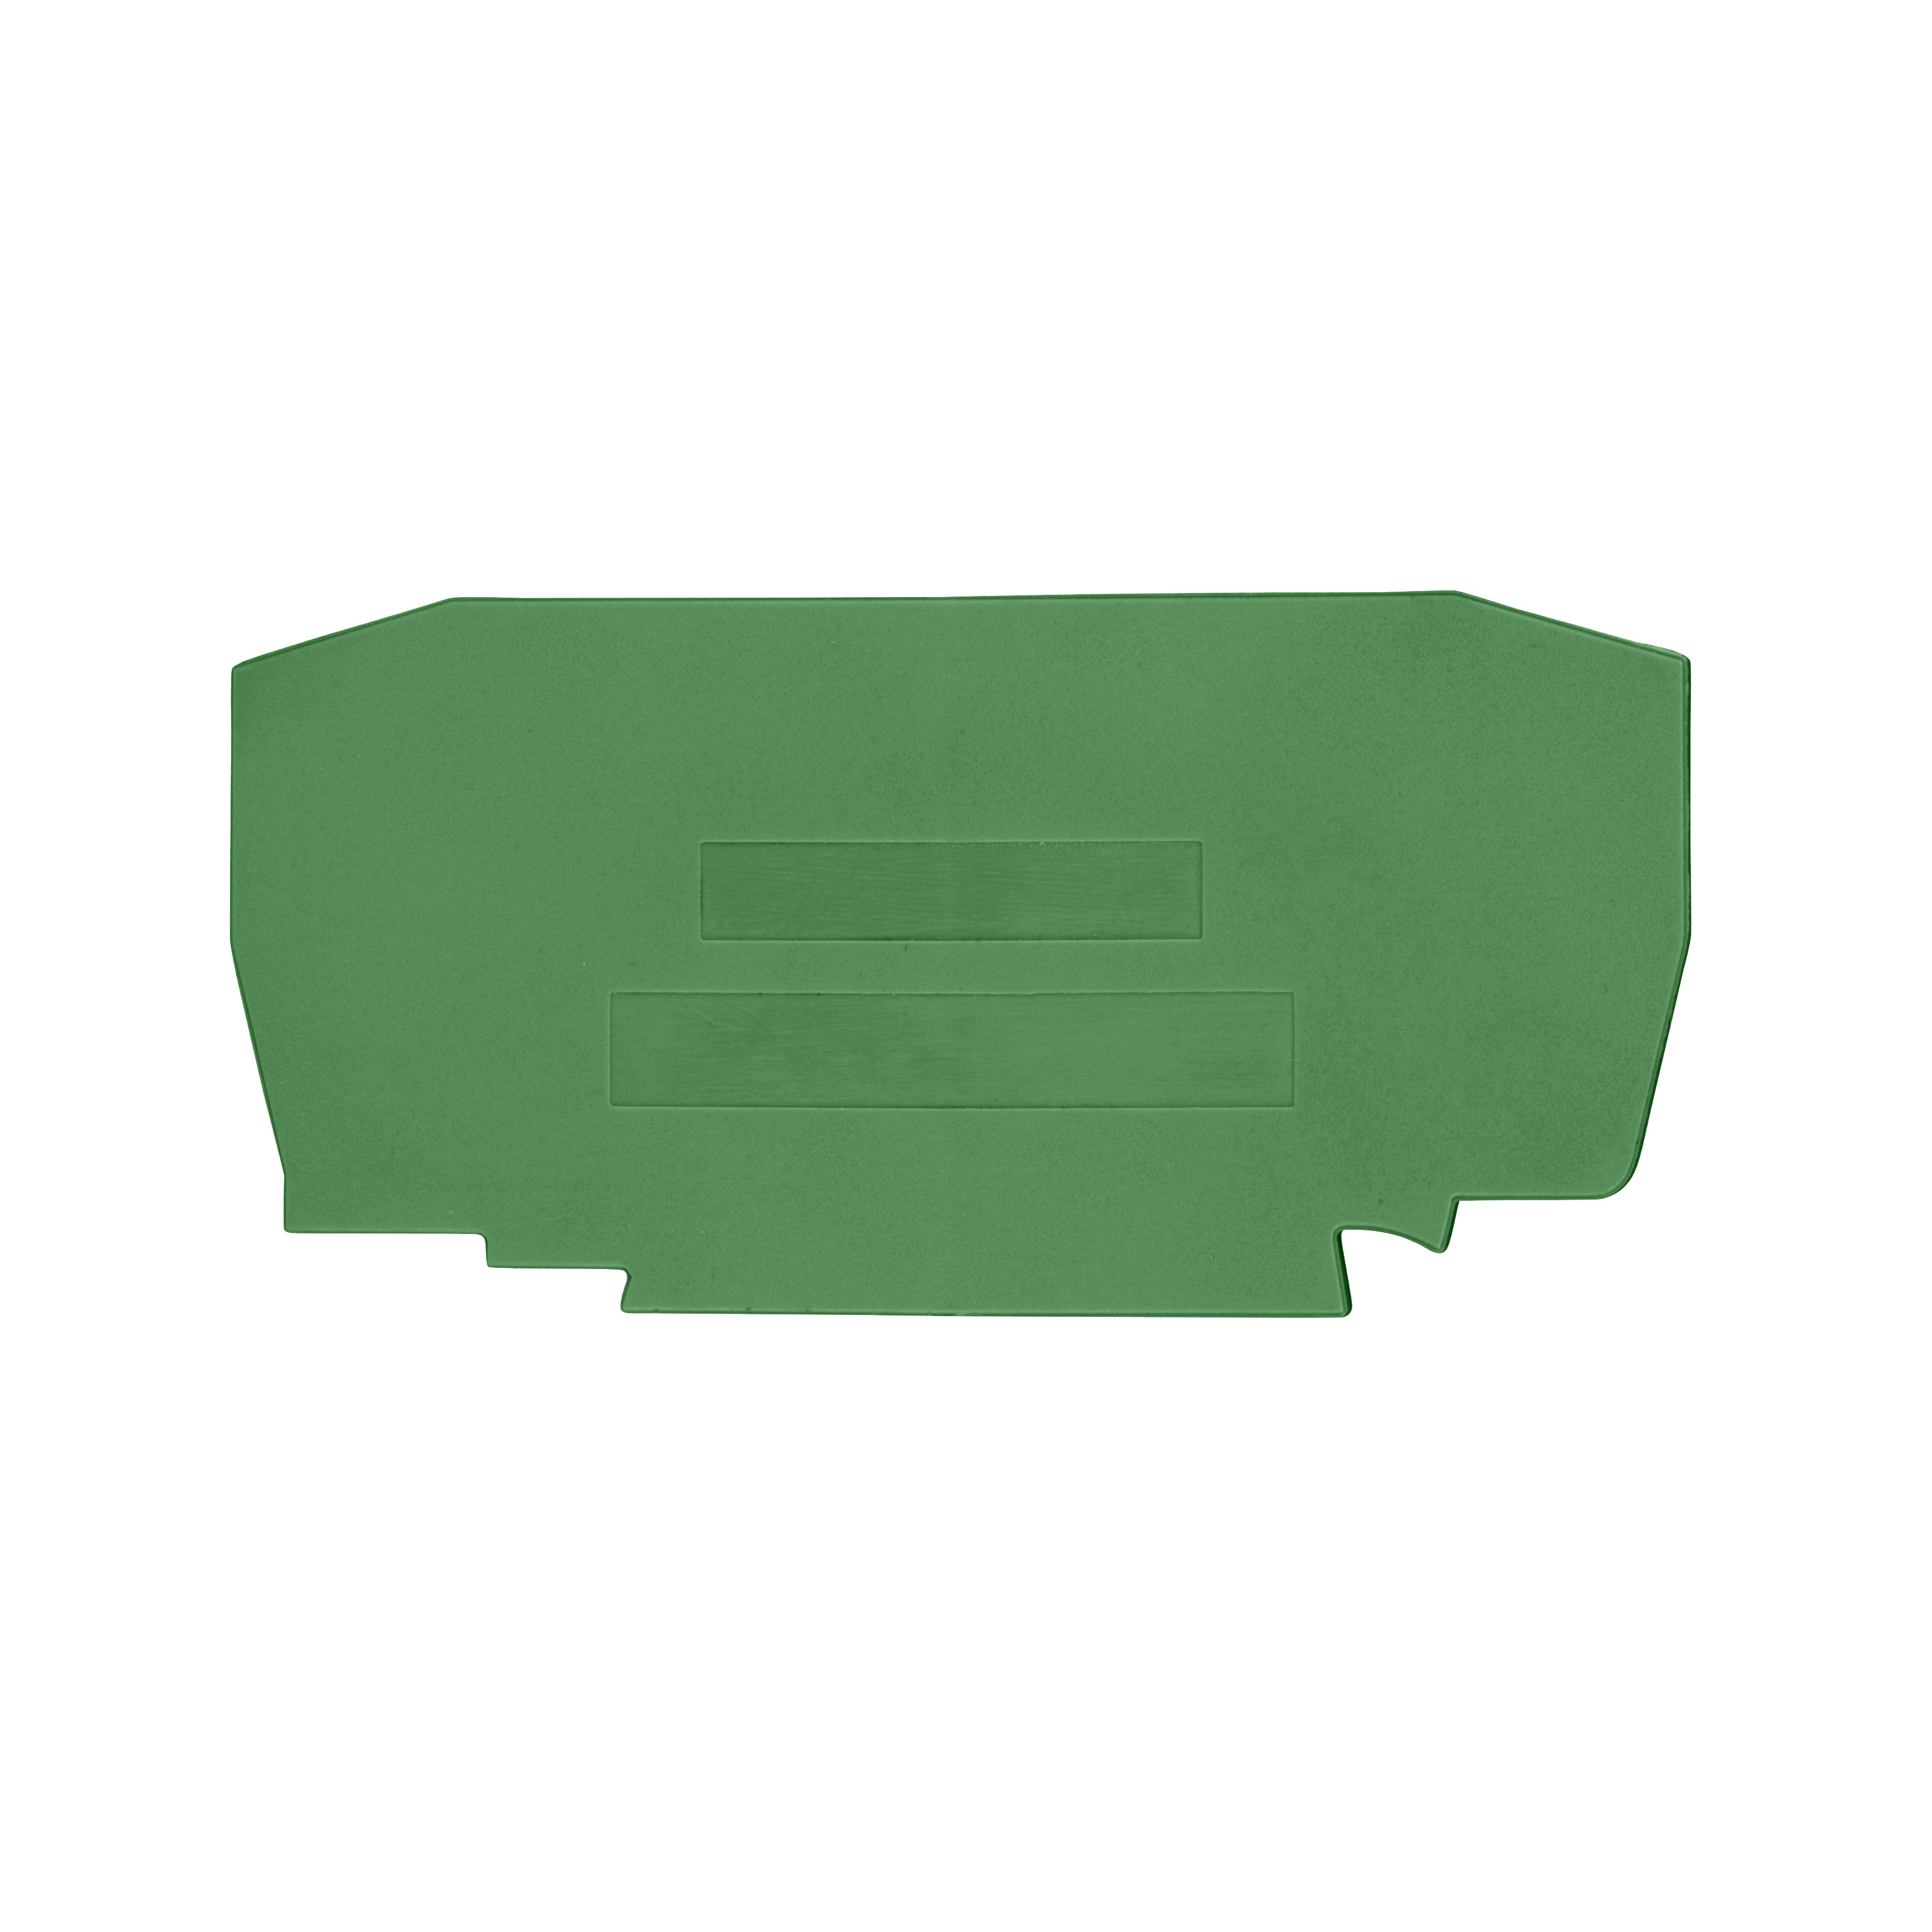 Foto: Endplatte für Federkraftklemme YBK 6 T grün (c) Schrack